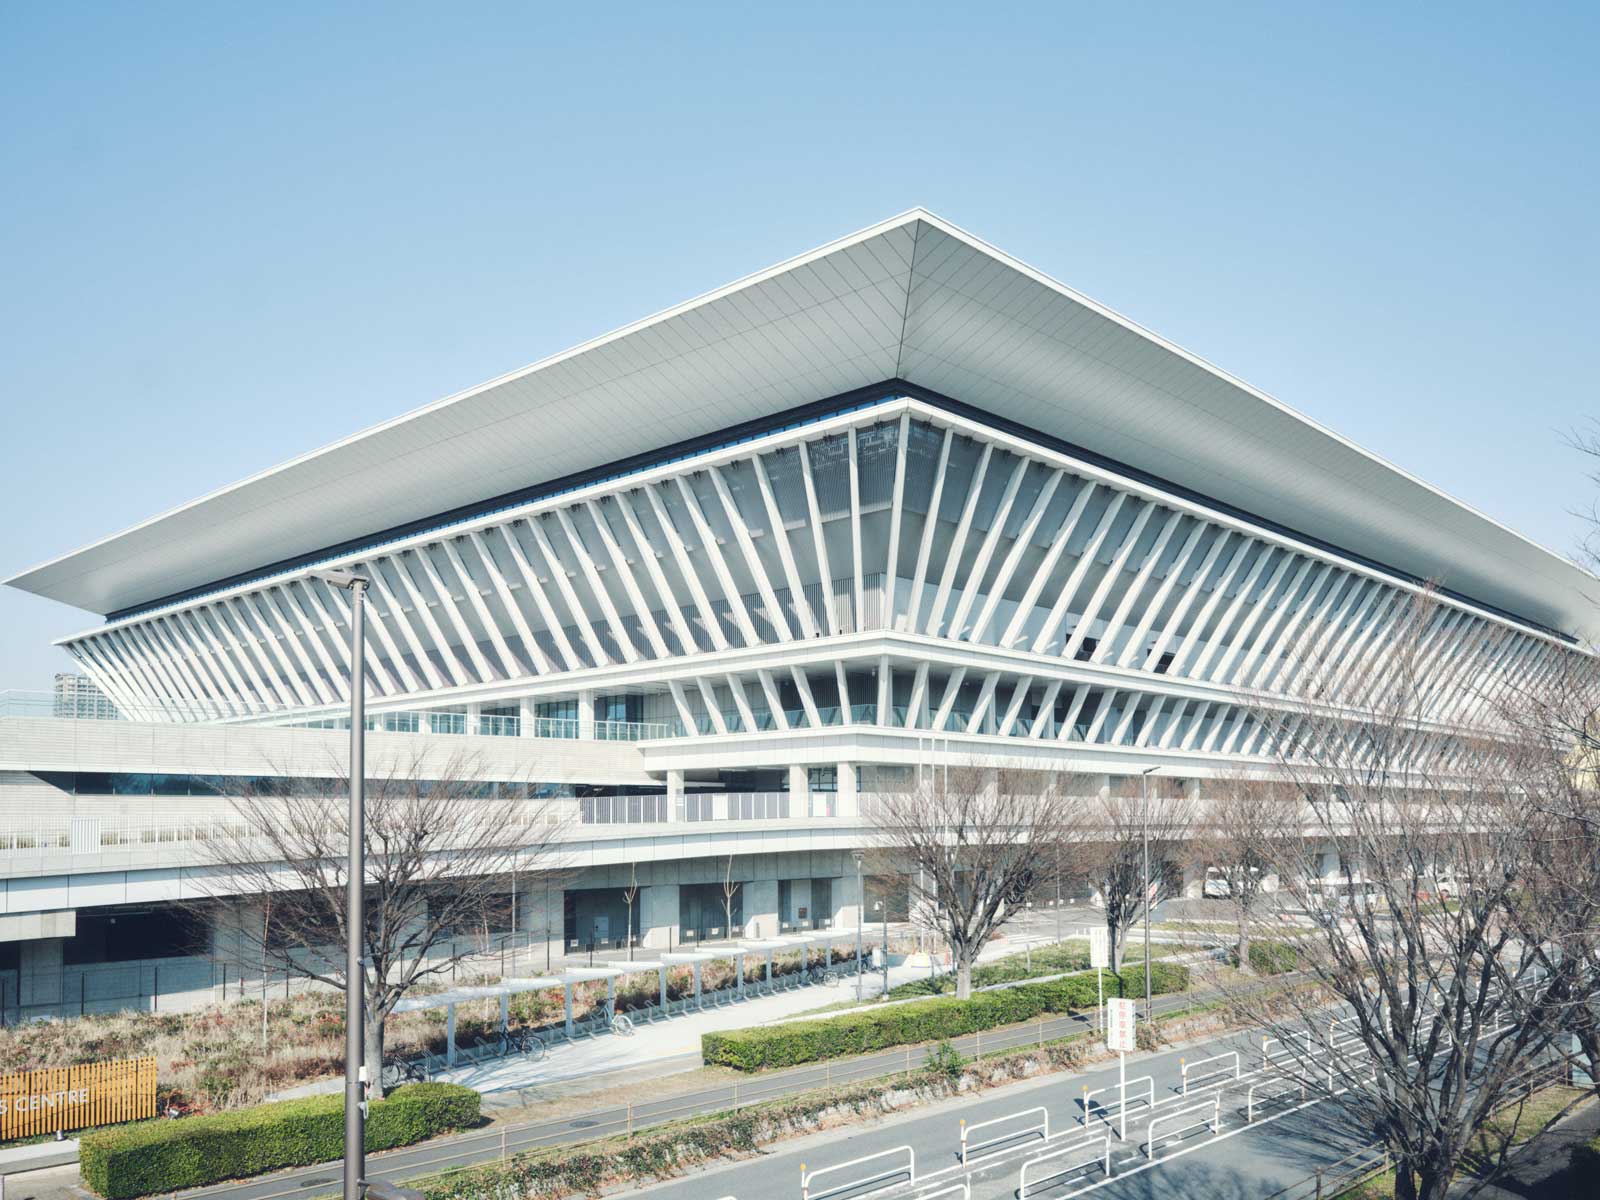 これまで水泳の聖地として愛された〈東京辰巳国際水泳場〉がアイスリンクとなり、〈東京アクアティクスセンター〉は新たな水泳の聖地として昨年から一般に開放されている。